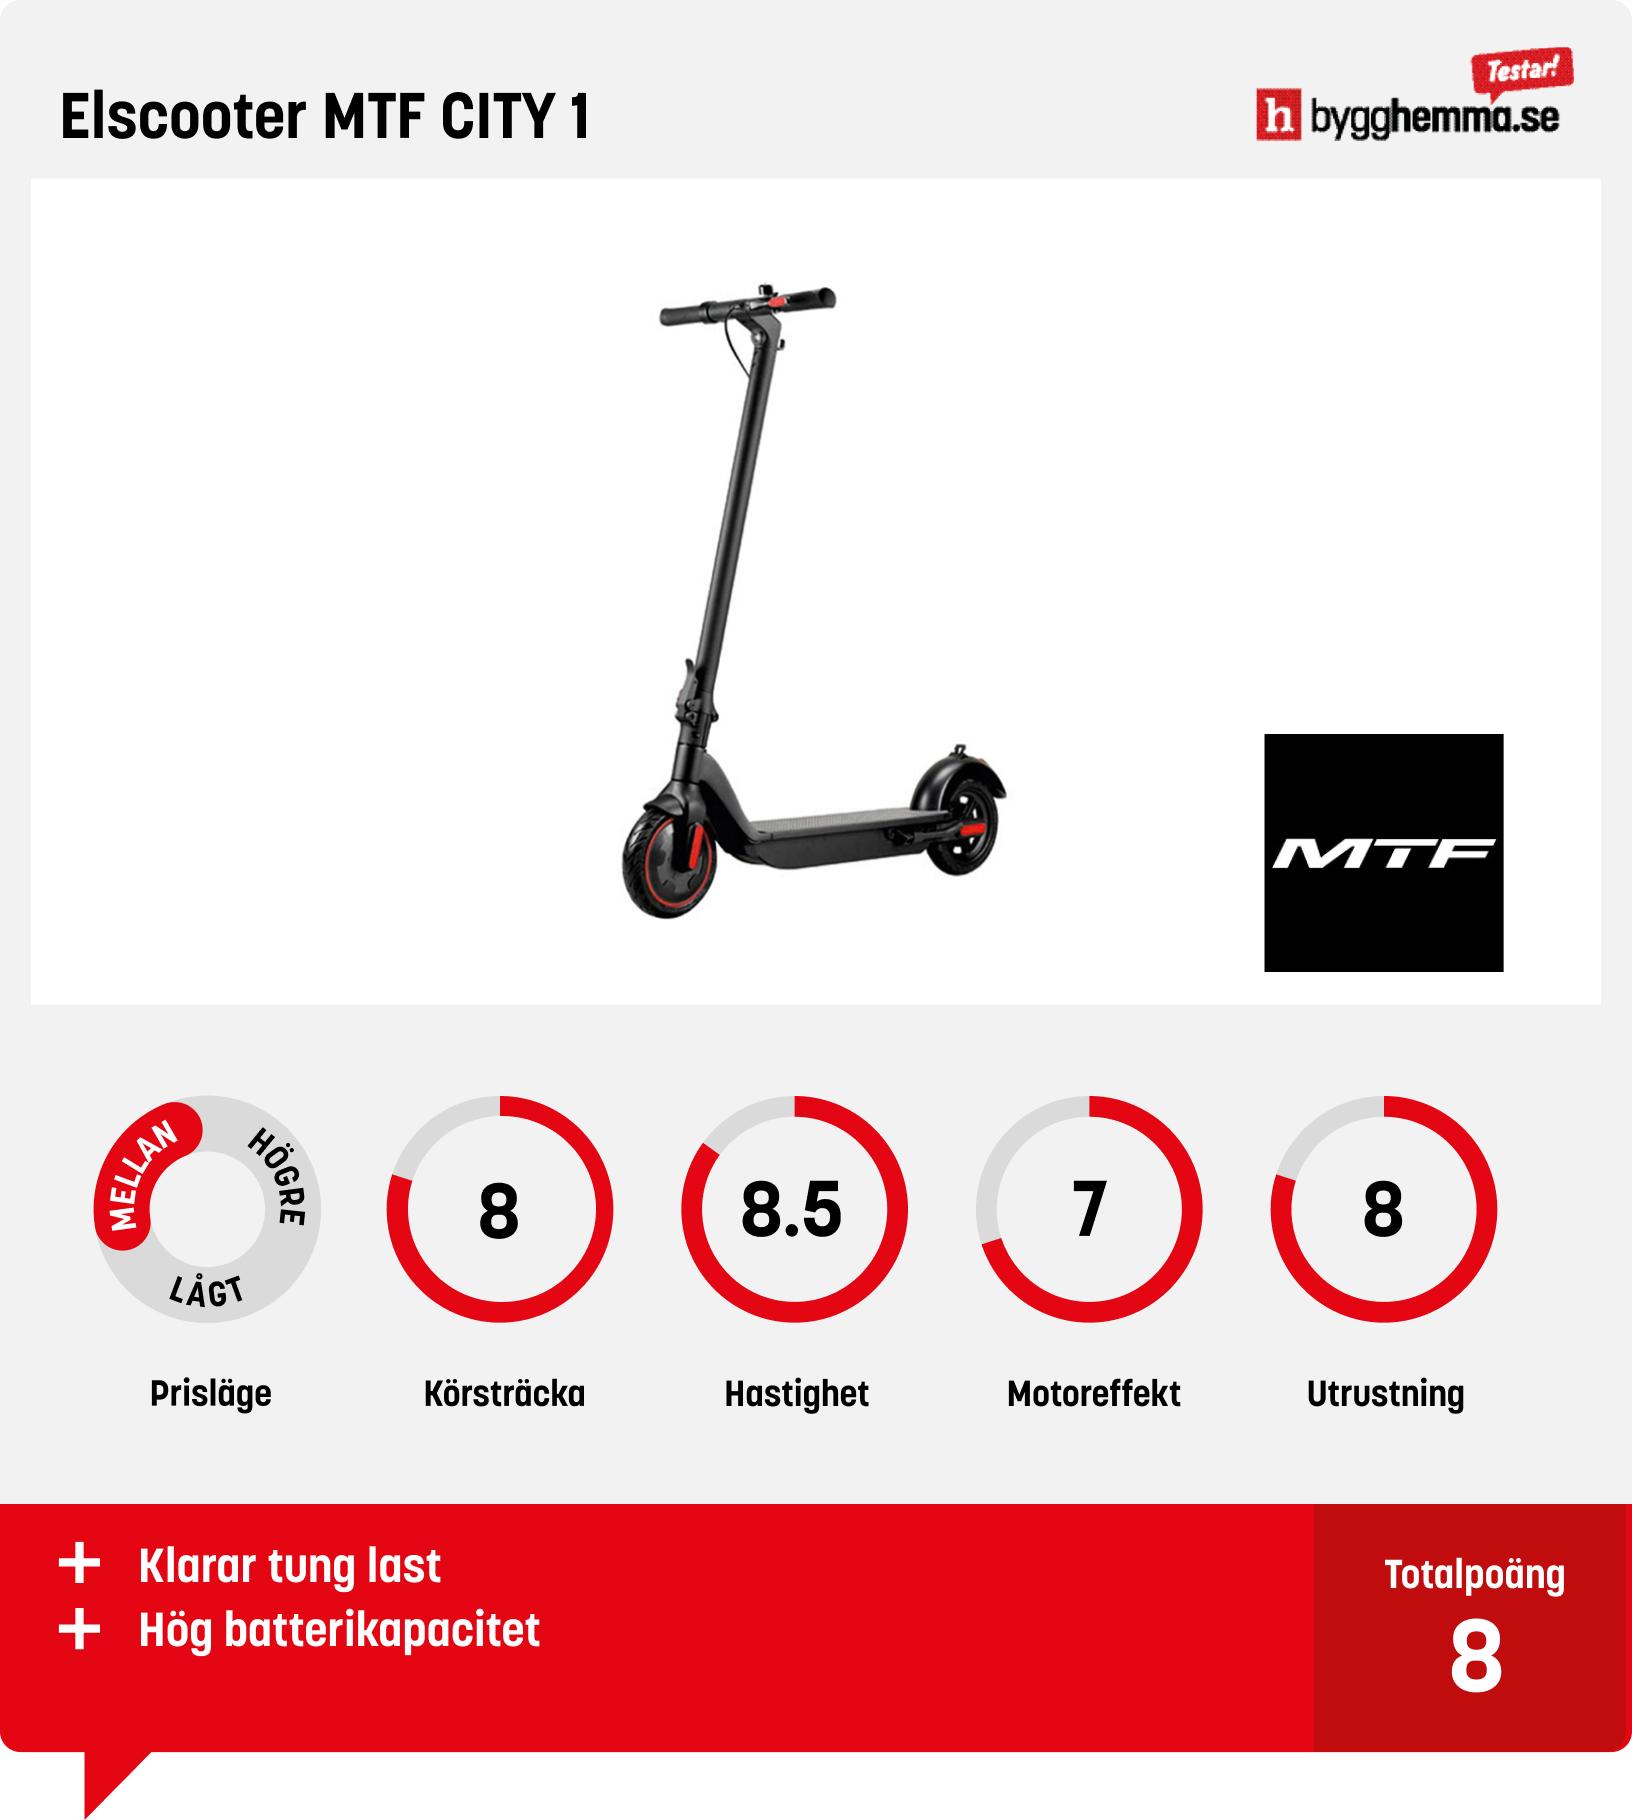 Elscooter bäst i test - Elscooter MTF CITY 1